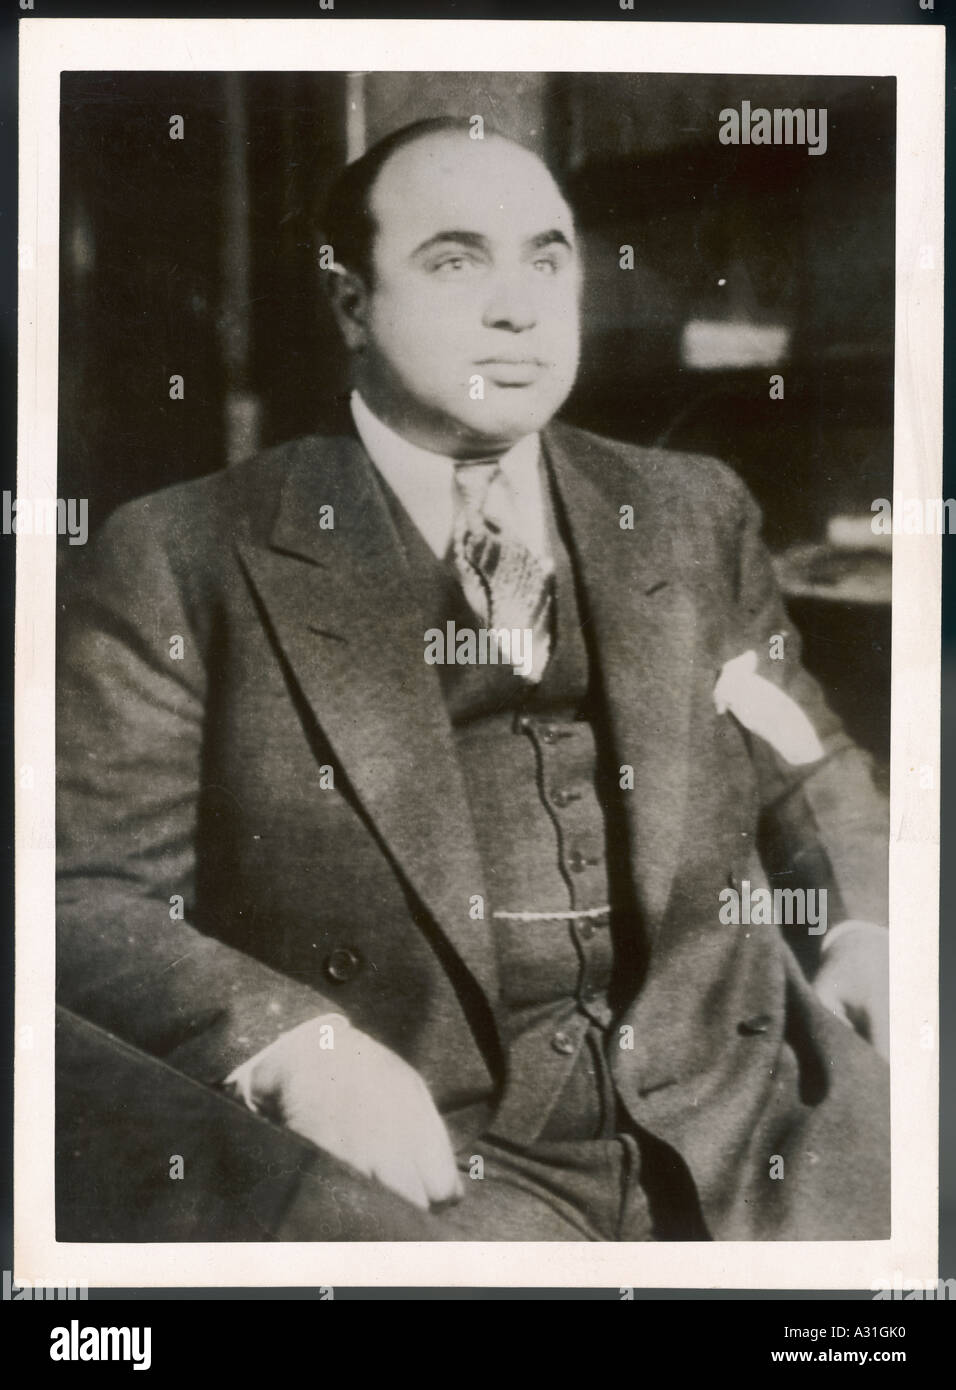 Al Capone 1931 Photo Stock Photo